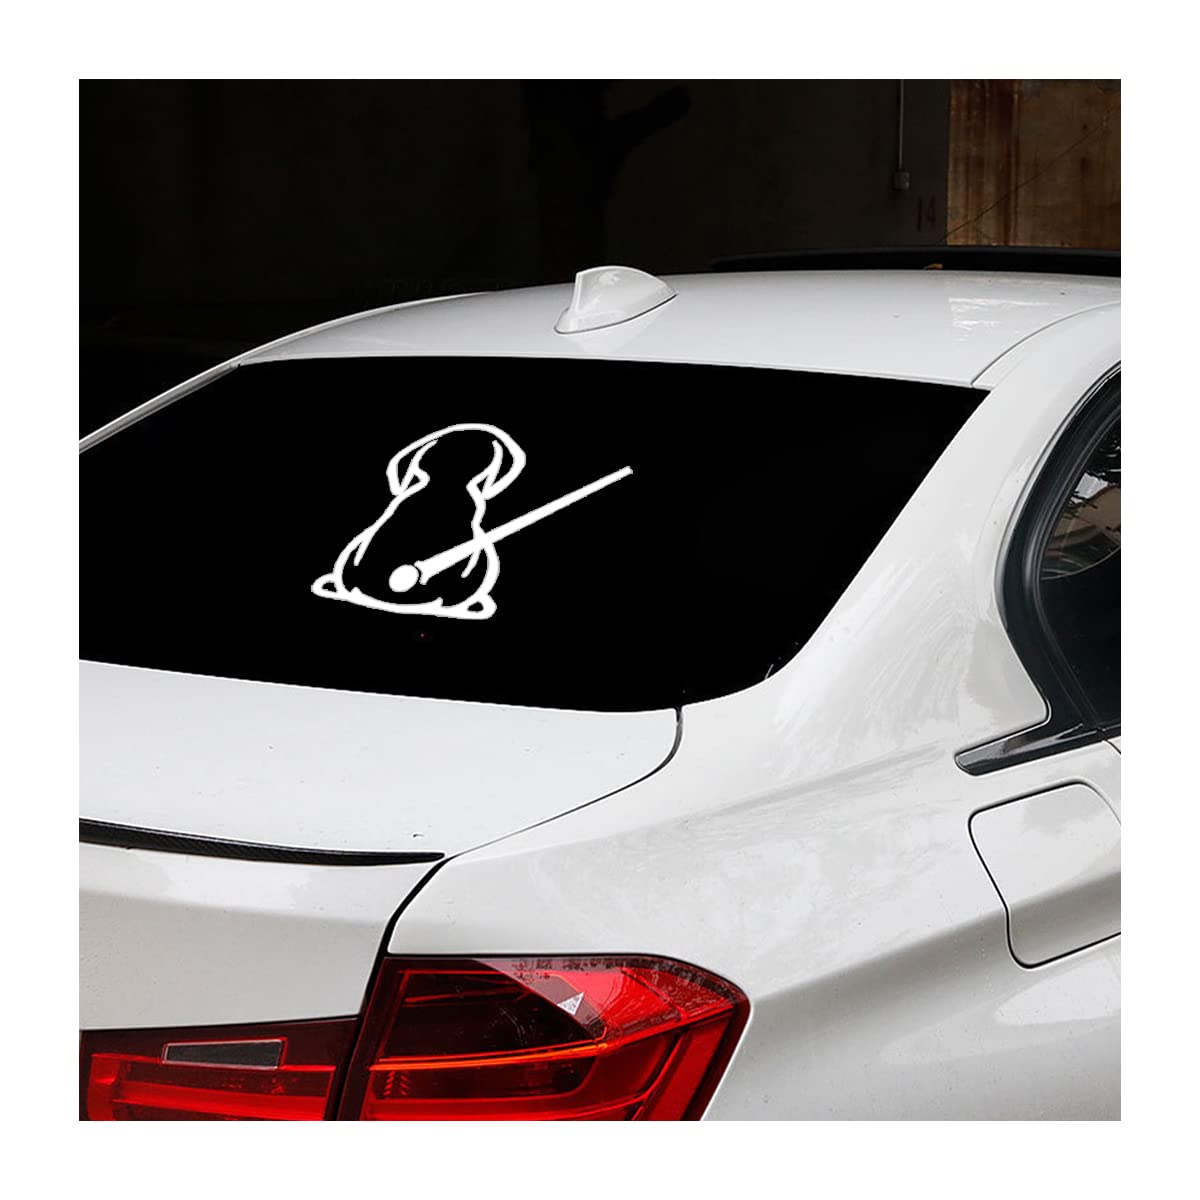 CGEAMDY Hund Scheibenwischer Aufkleber, 2 Stück Lustige Hunde Moving Tail Autoaufkleber, Auto Heckscheiben Hundewischer Reflektierende Dekoration Abziehbilder (Weiß) von CGEAMDY